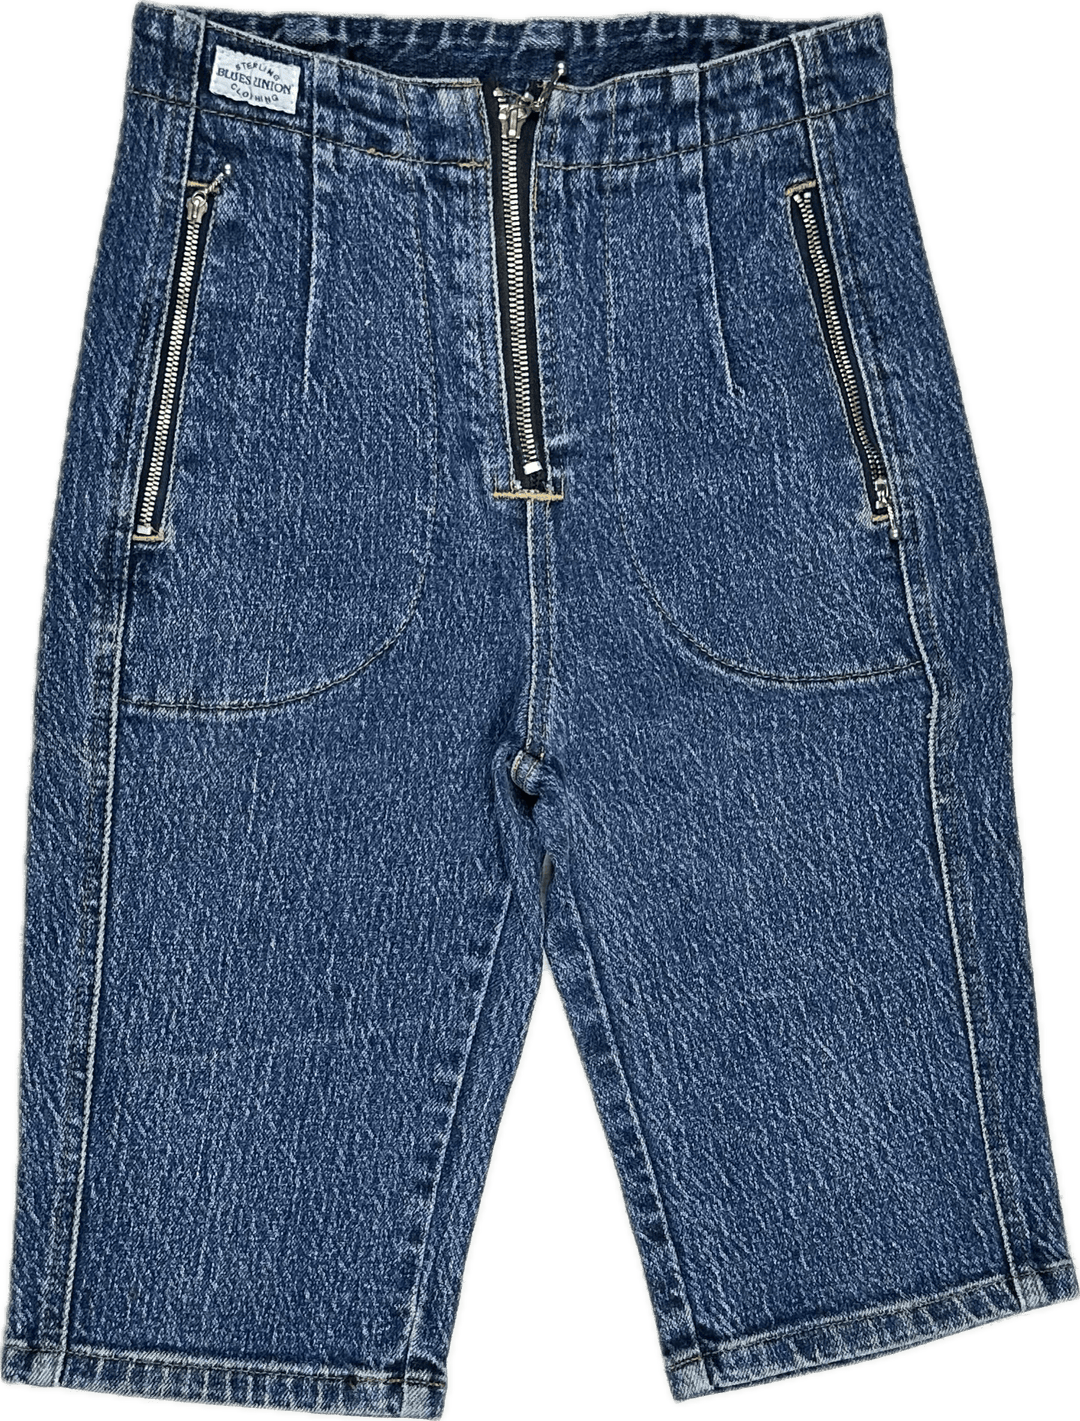 Blues Union 1980's Knickerbocker Zip Jeans - Suit Size 6 - Jean Pool